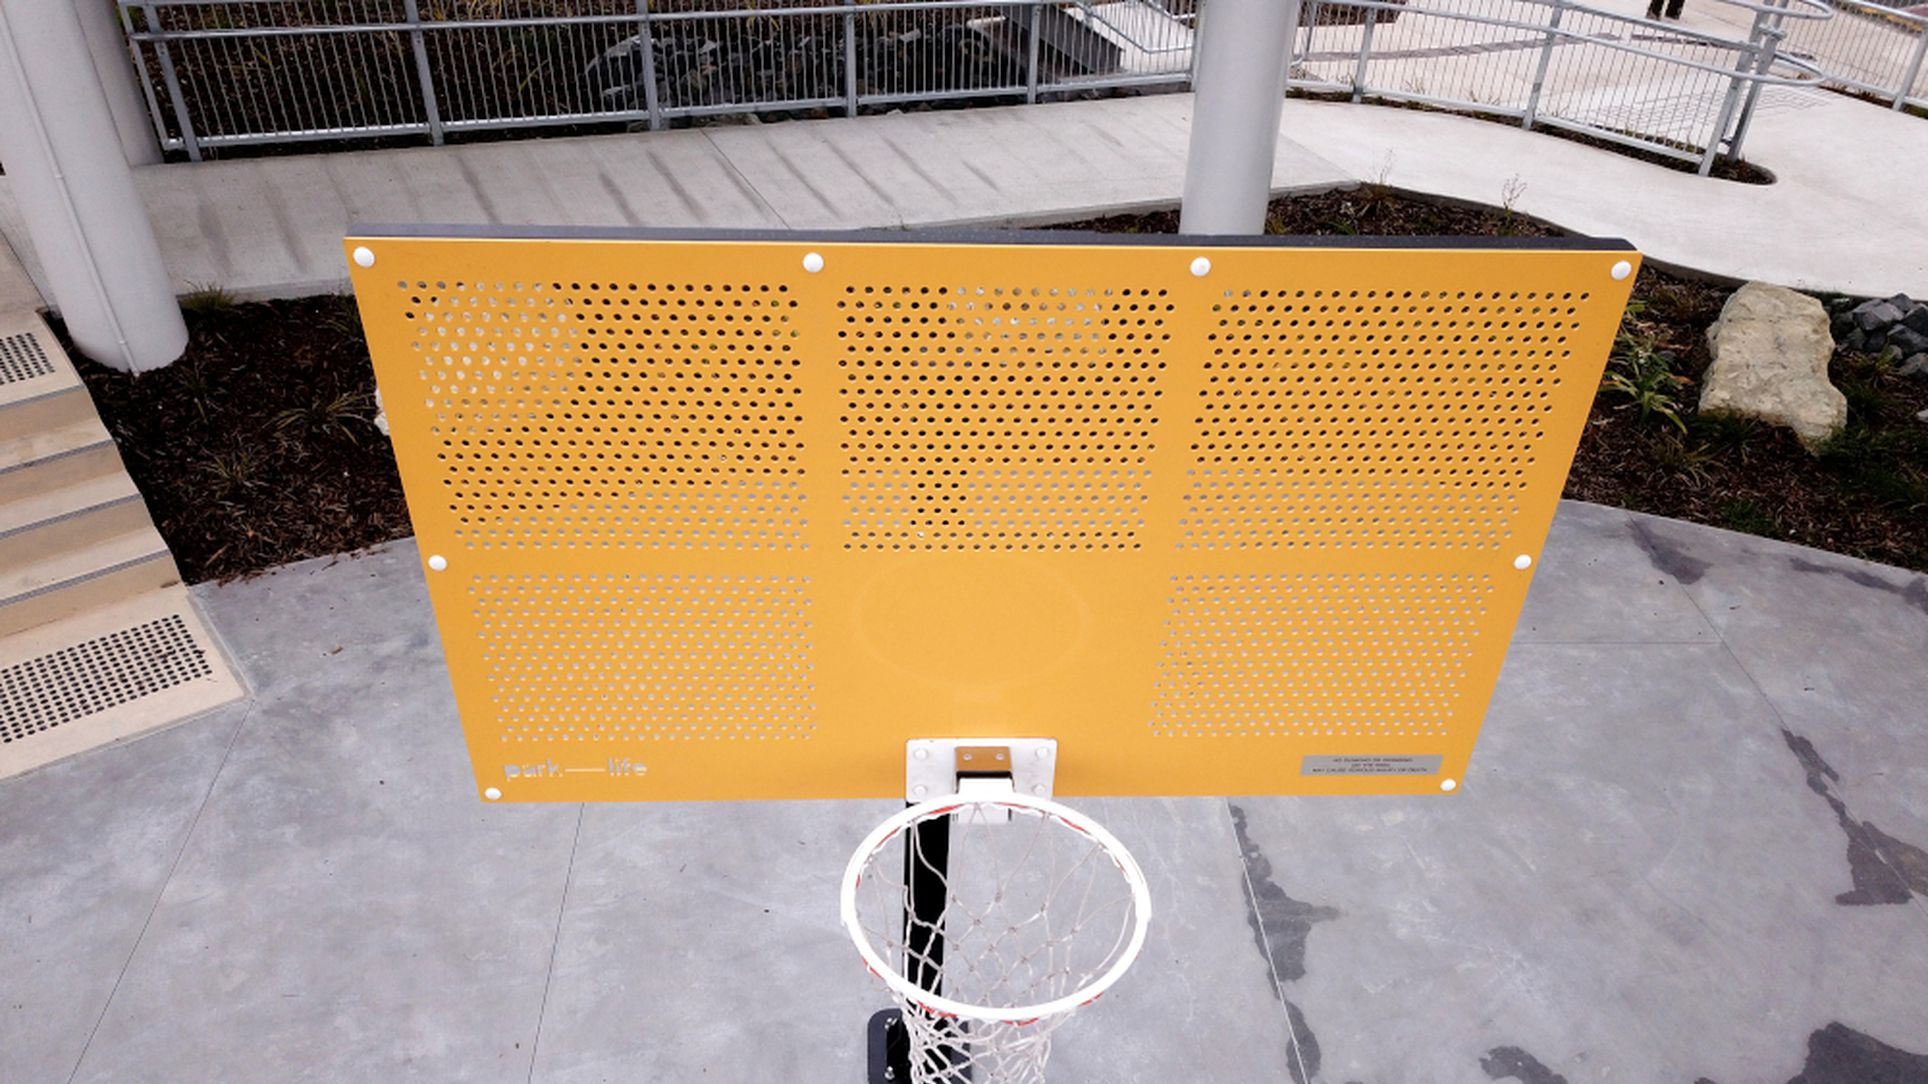 Grizzly Basketball Hoop with Yellow Alu Backboard